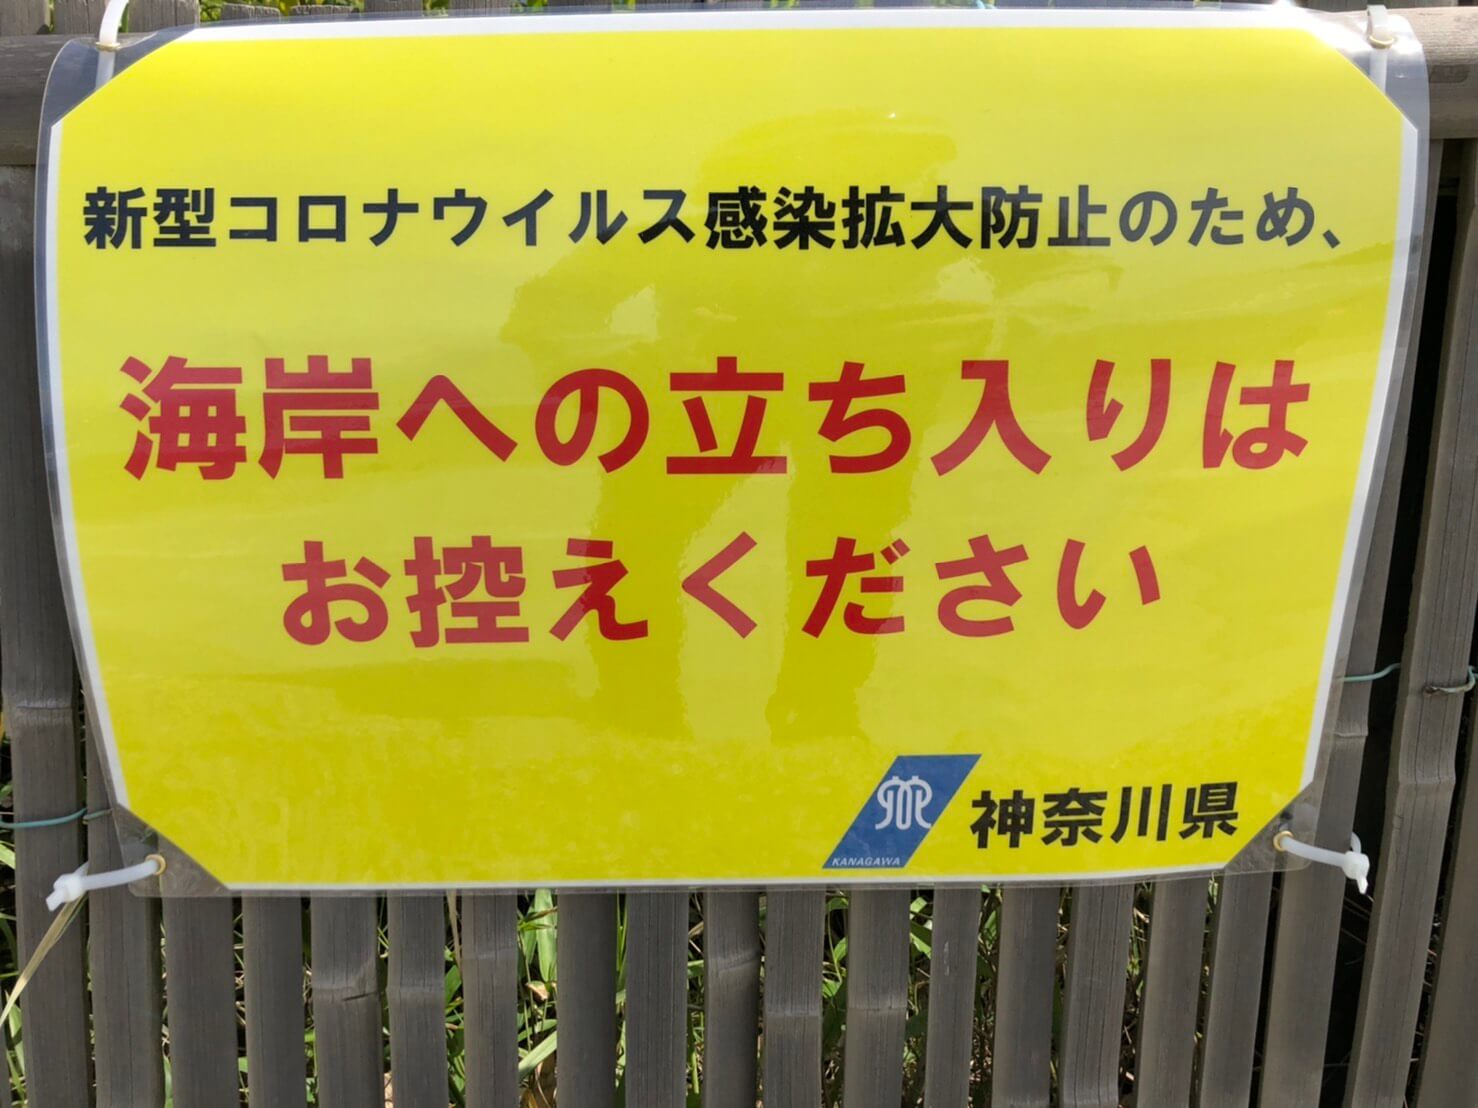 神奈川県全域にサーフィン自粛の要請